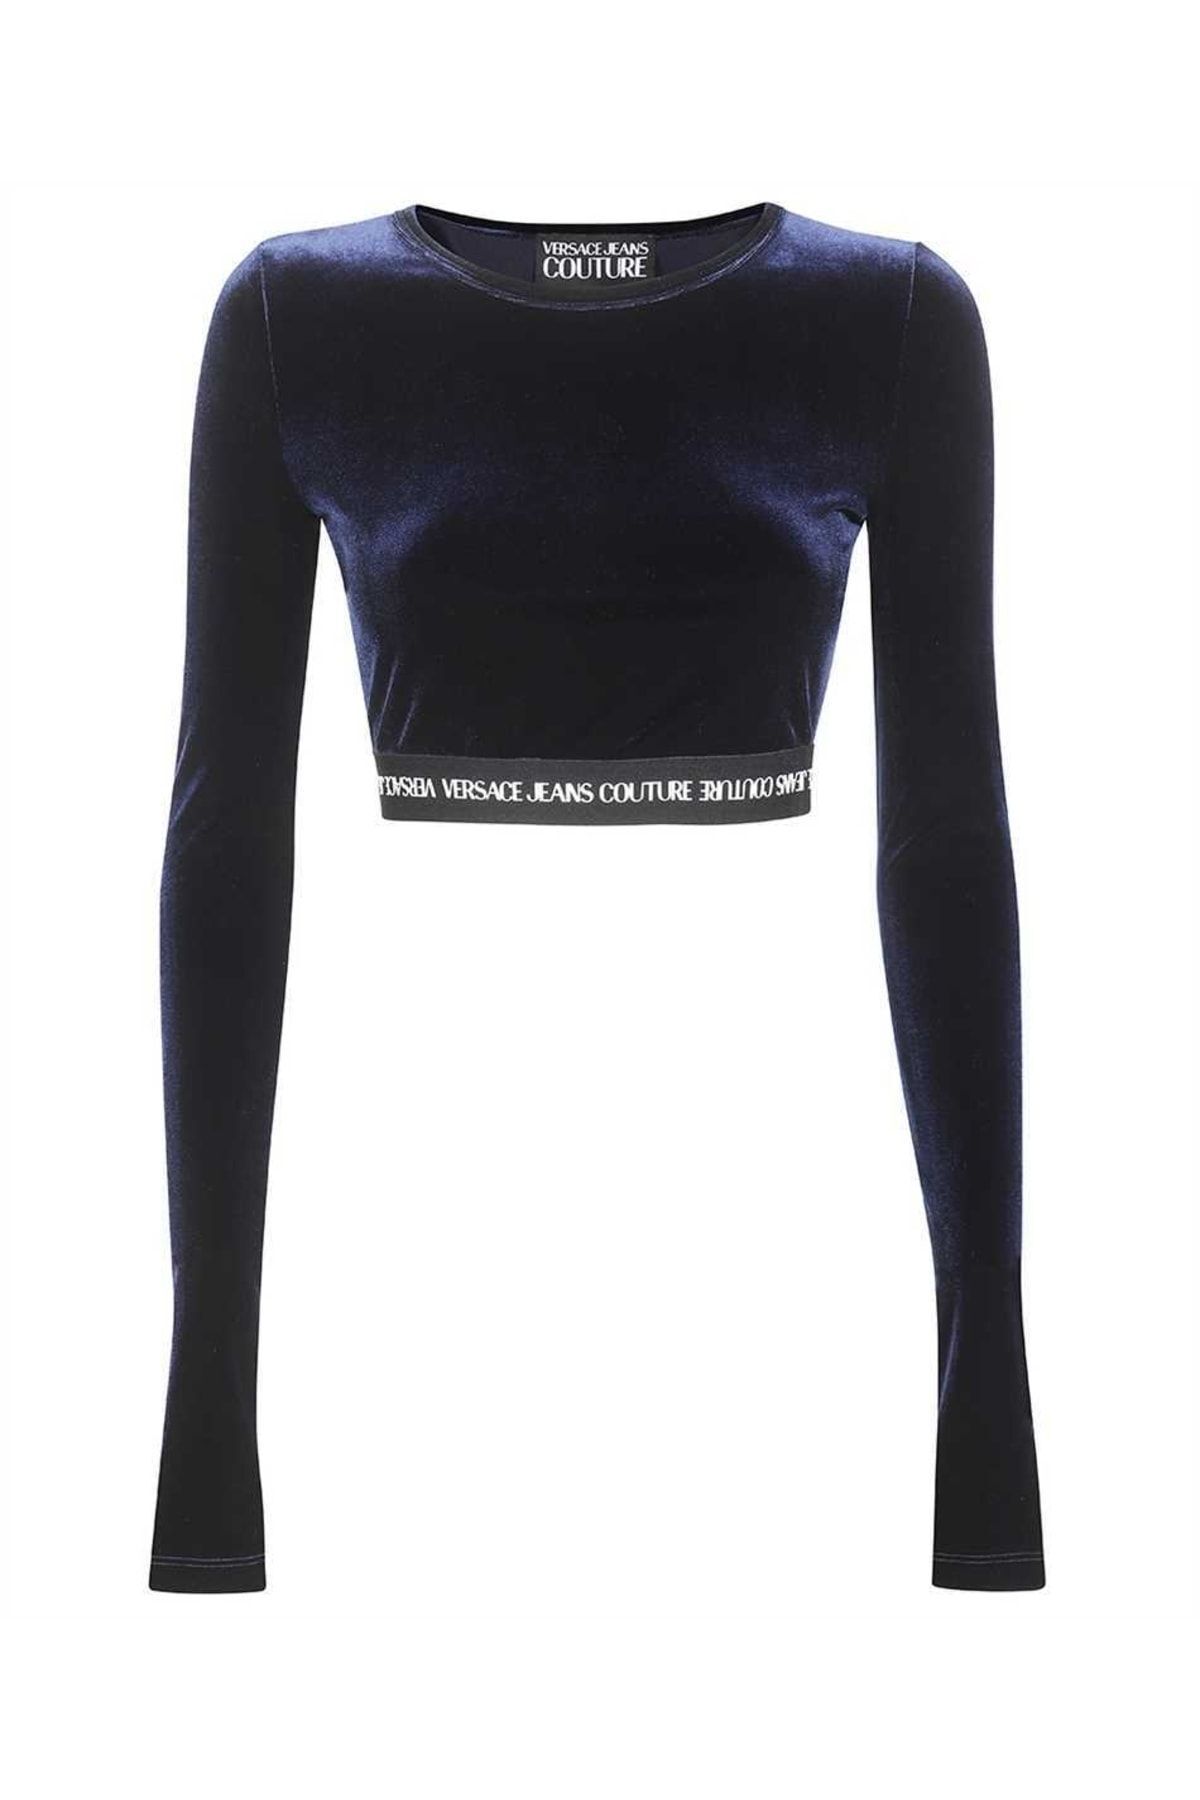 Versace Kadın Düz Crop Kadife Uzun Kollu Lacivert T-shirt 73hah218 J0008-259